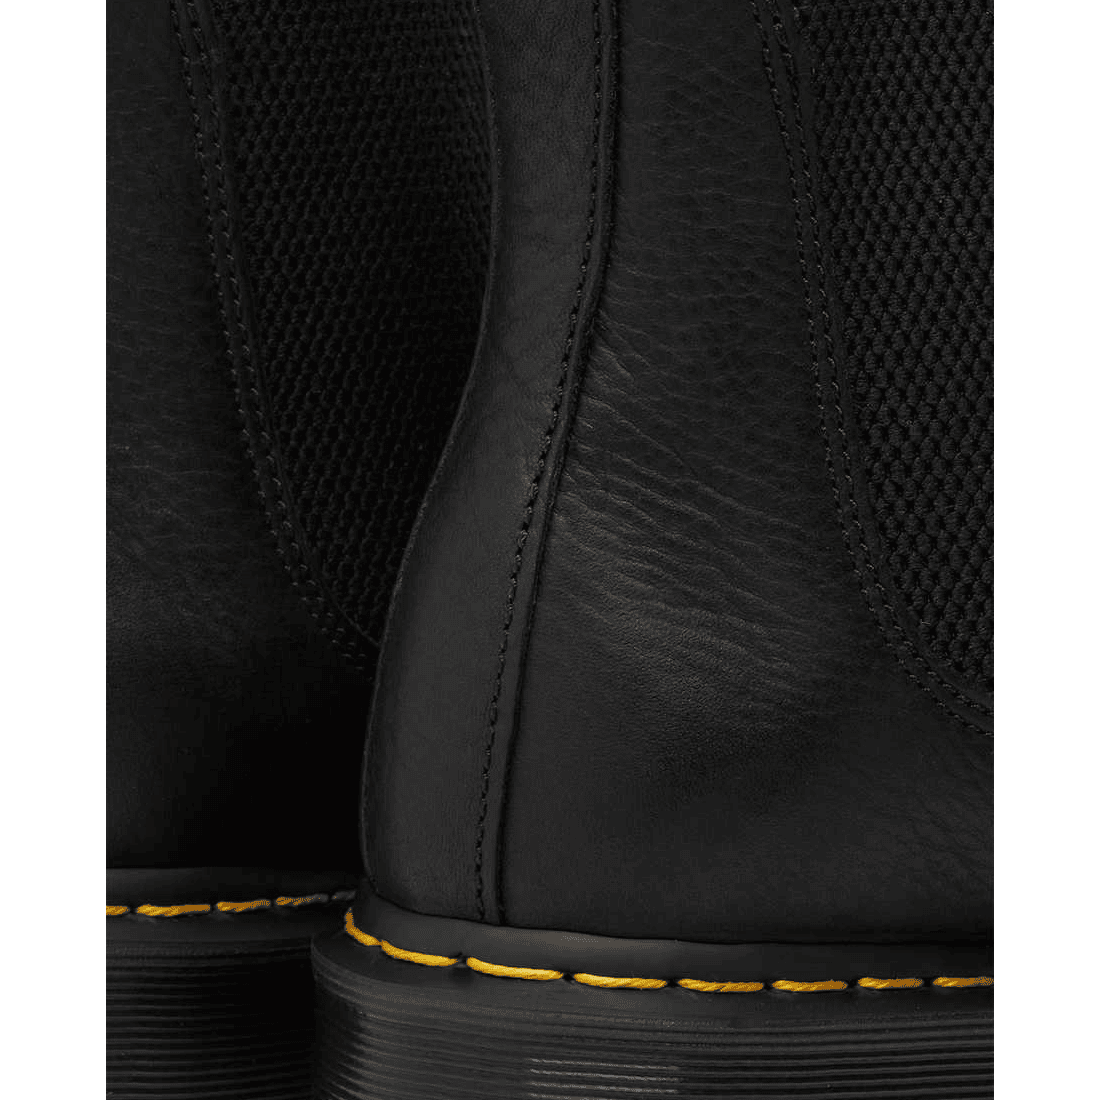 Dr. Martens 2976 Leather Chelsea Boots Black Ambassador